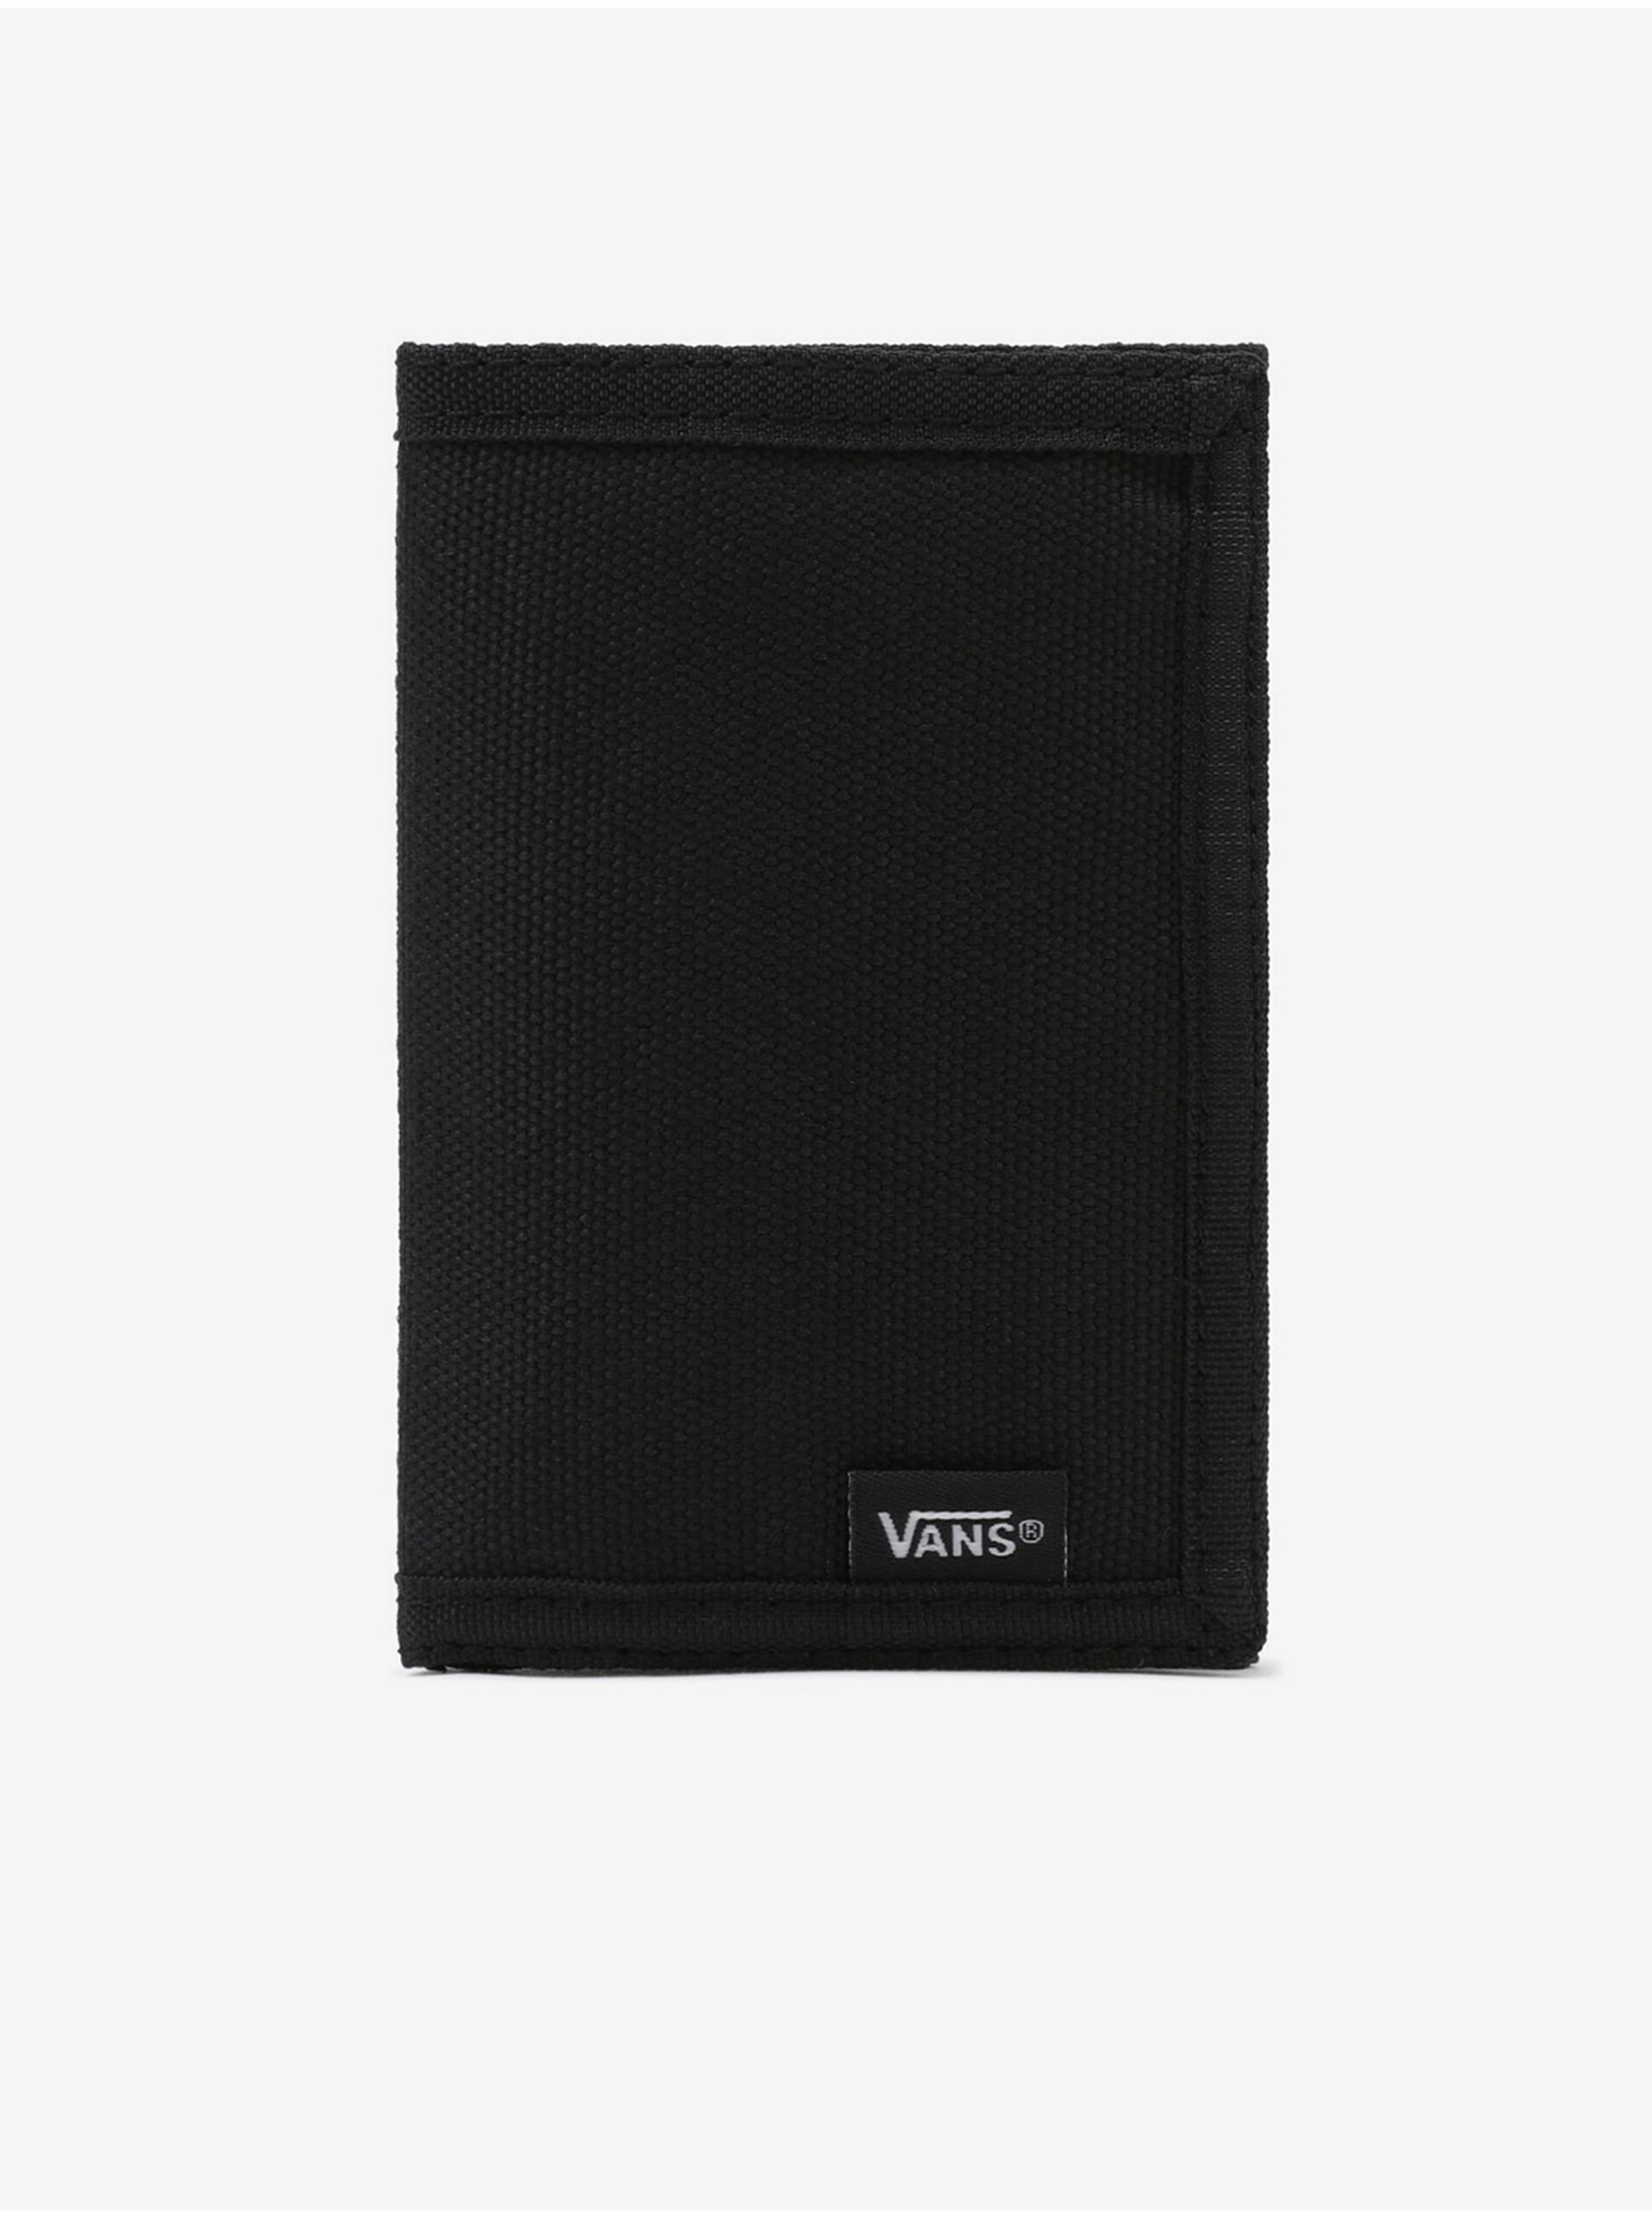 Black wallet VANS Slipped - Men